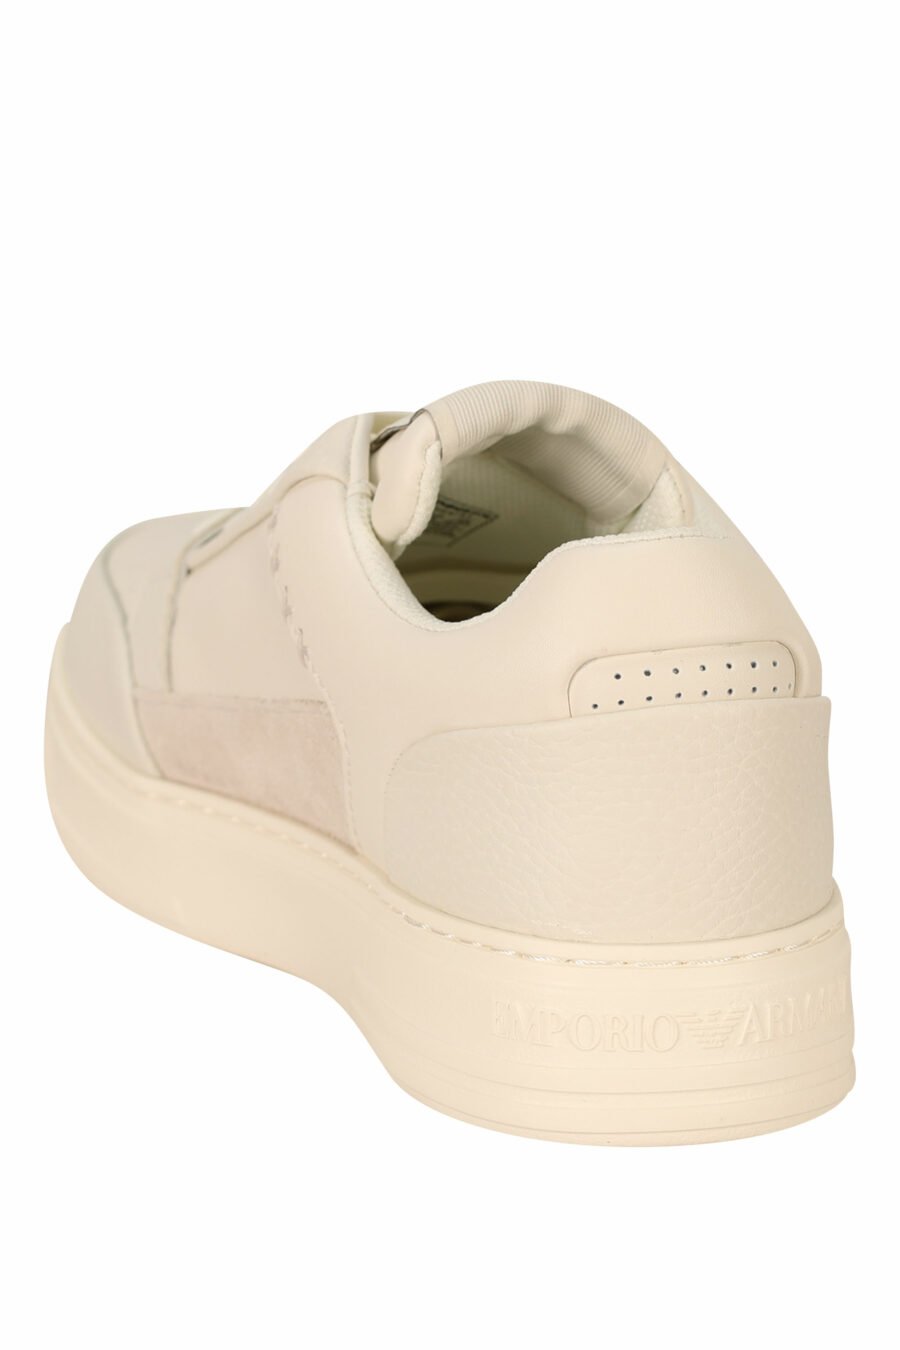 Sapatilhas brancas com mini-logotipo em bege e borracha - 8058947169122 3